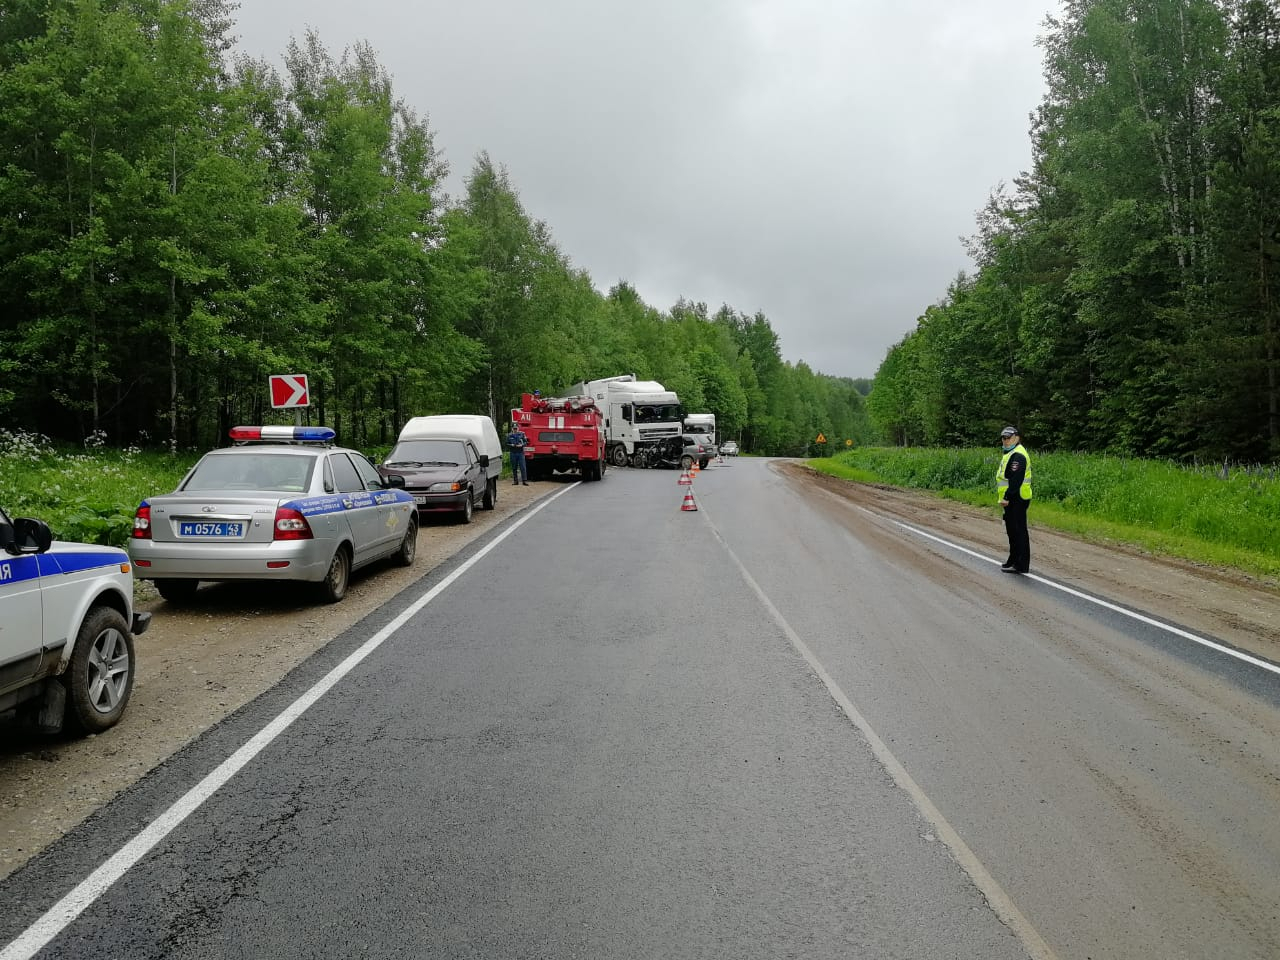 Двое скончались на месте: появились подробности ДТП на трассе Киров - Советск - Яранск